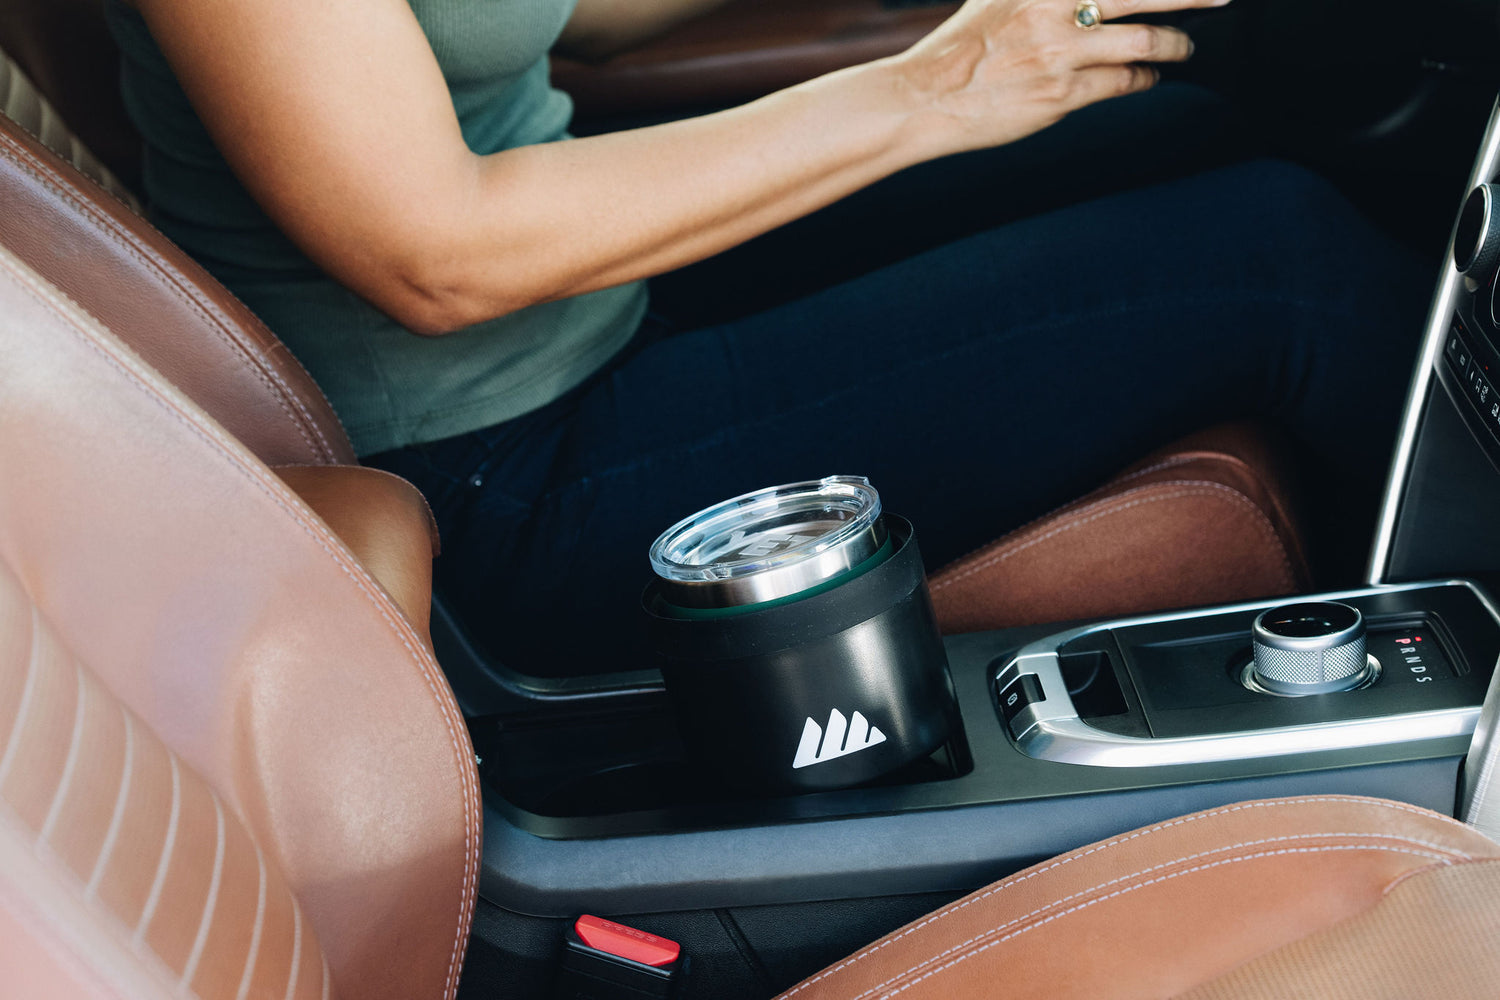  Integral Ultimate Expander Car Cup Holder - Adjustable